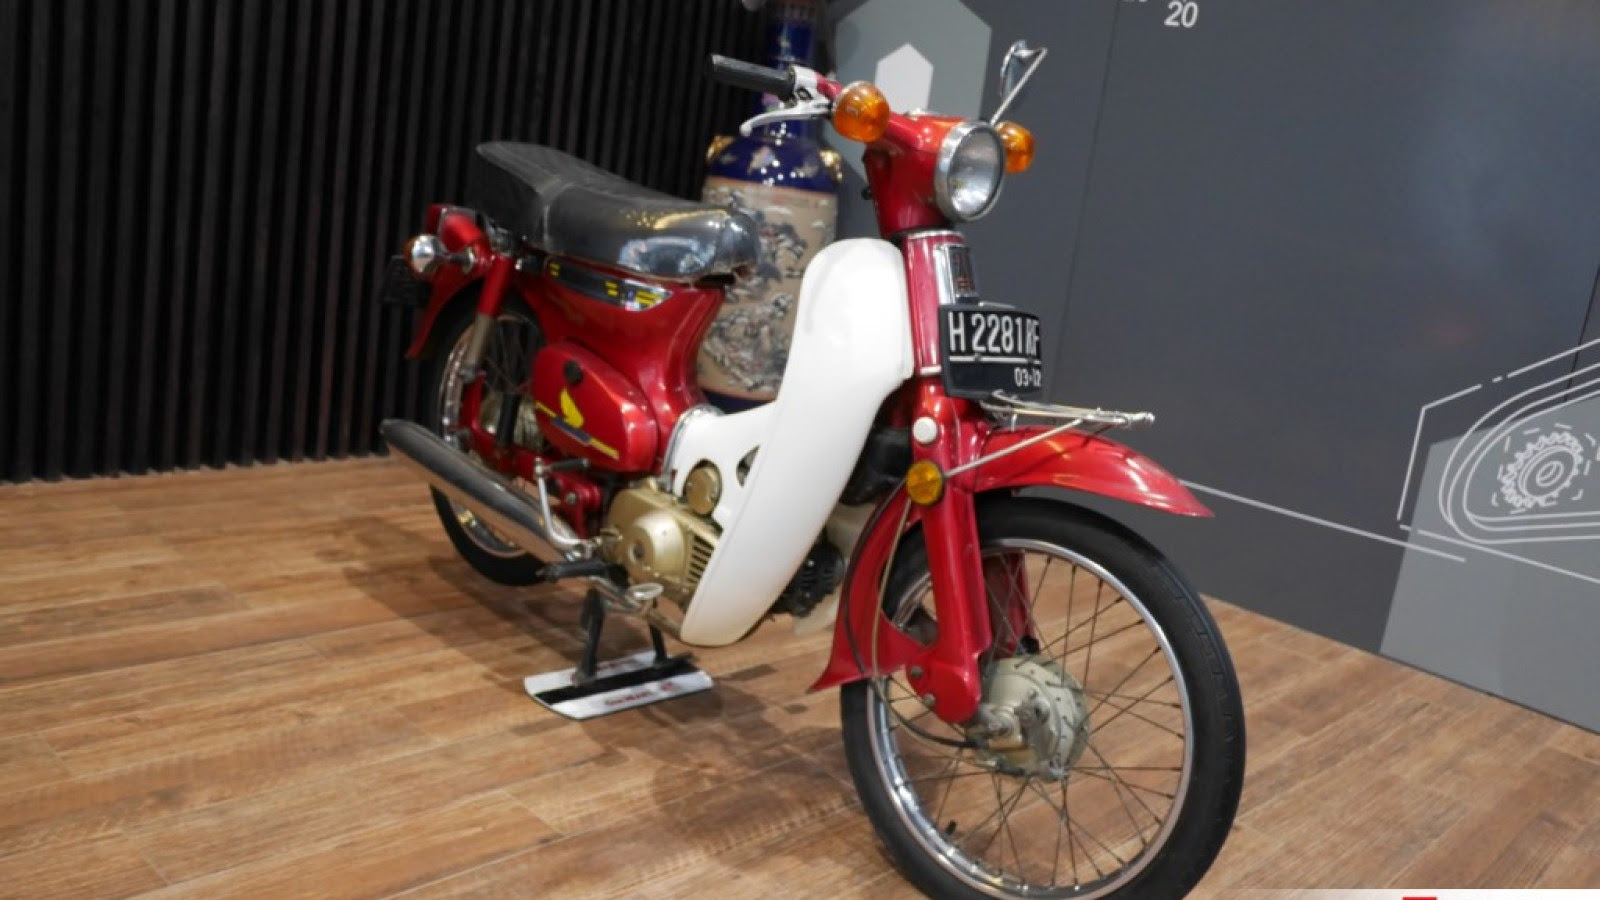 62 Modifikasi Motor Grand Bali Terbaru Gedheg Motor